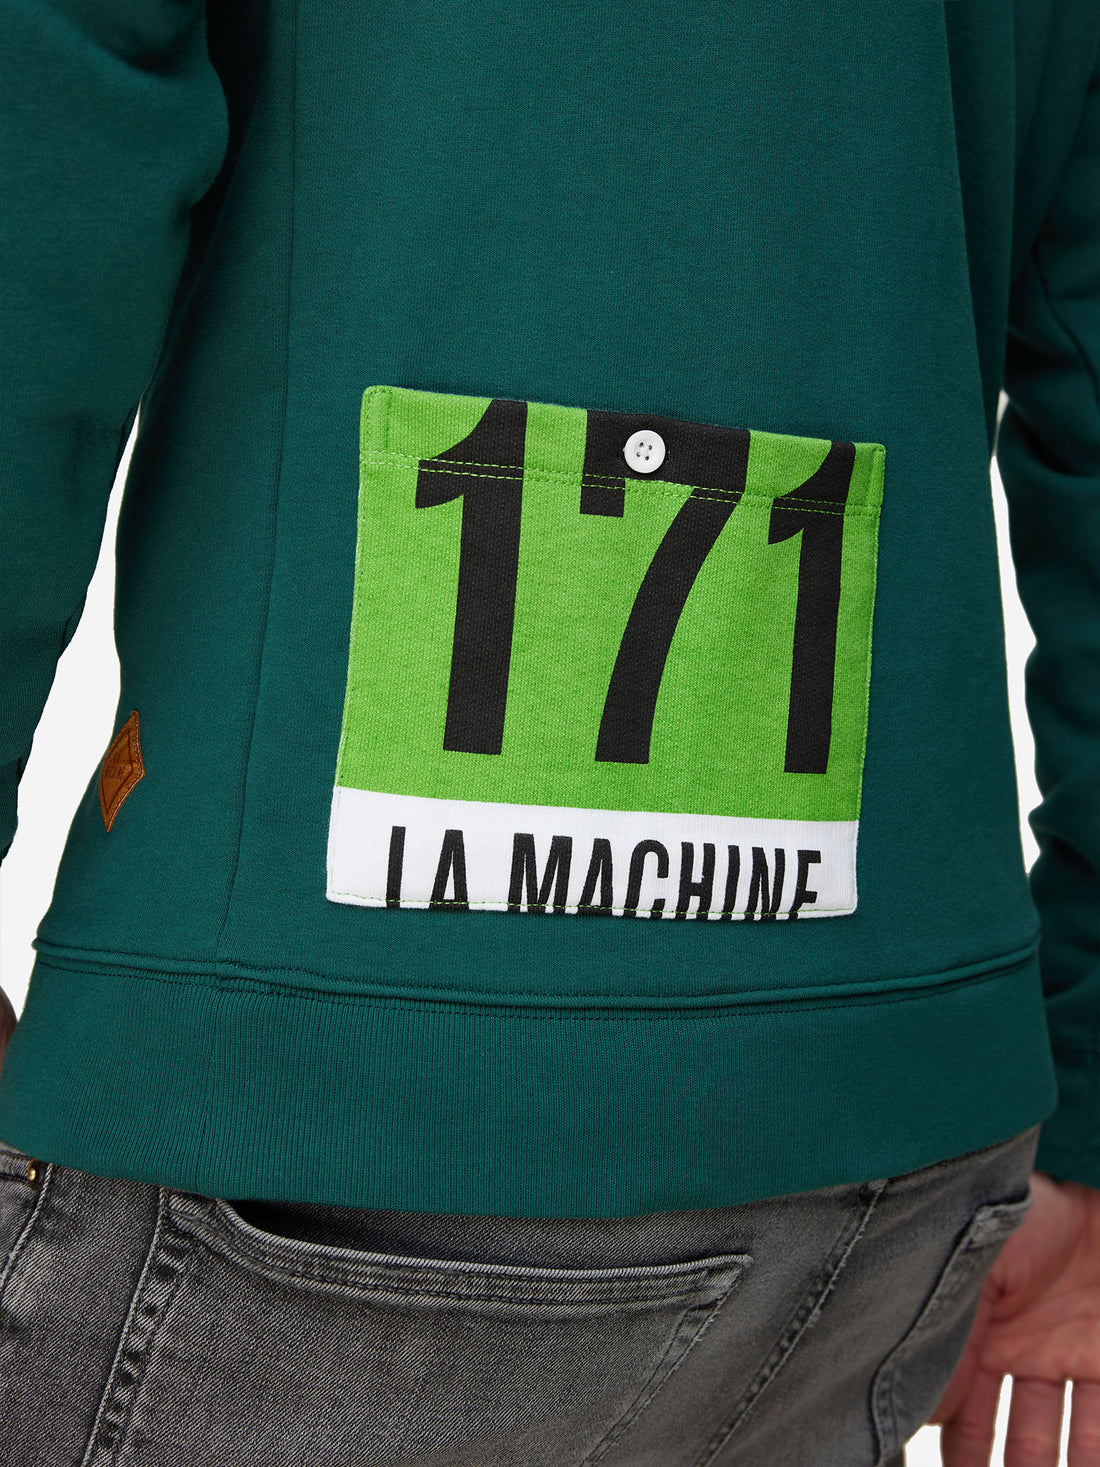 Maillot Vert - Sweatshirt - La Machine Cycle Club